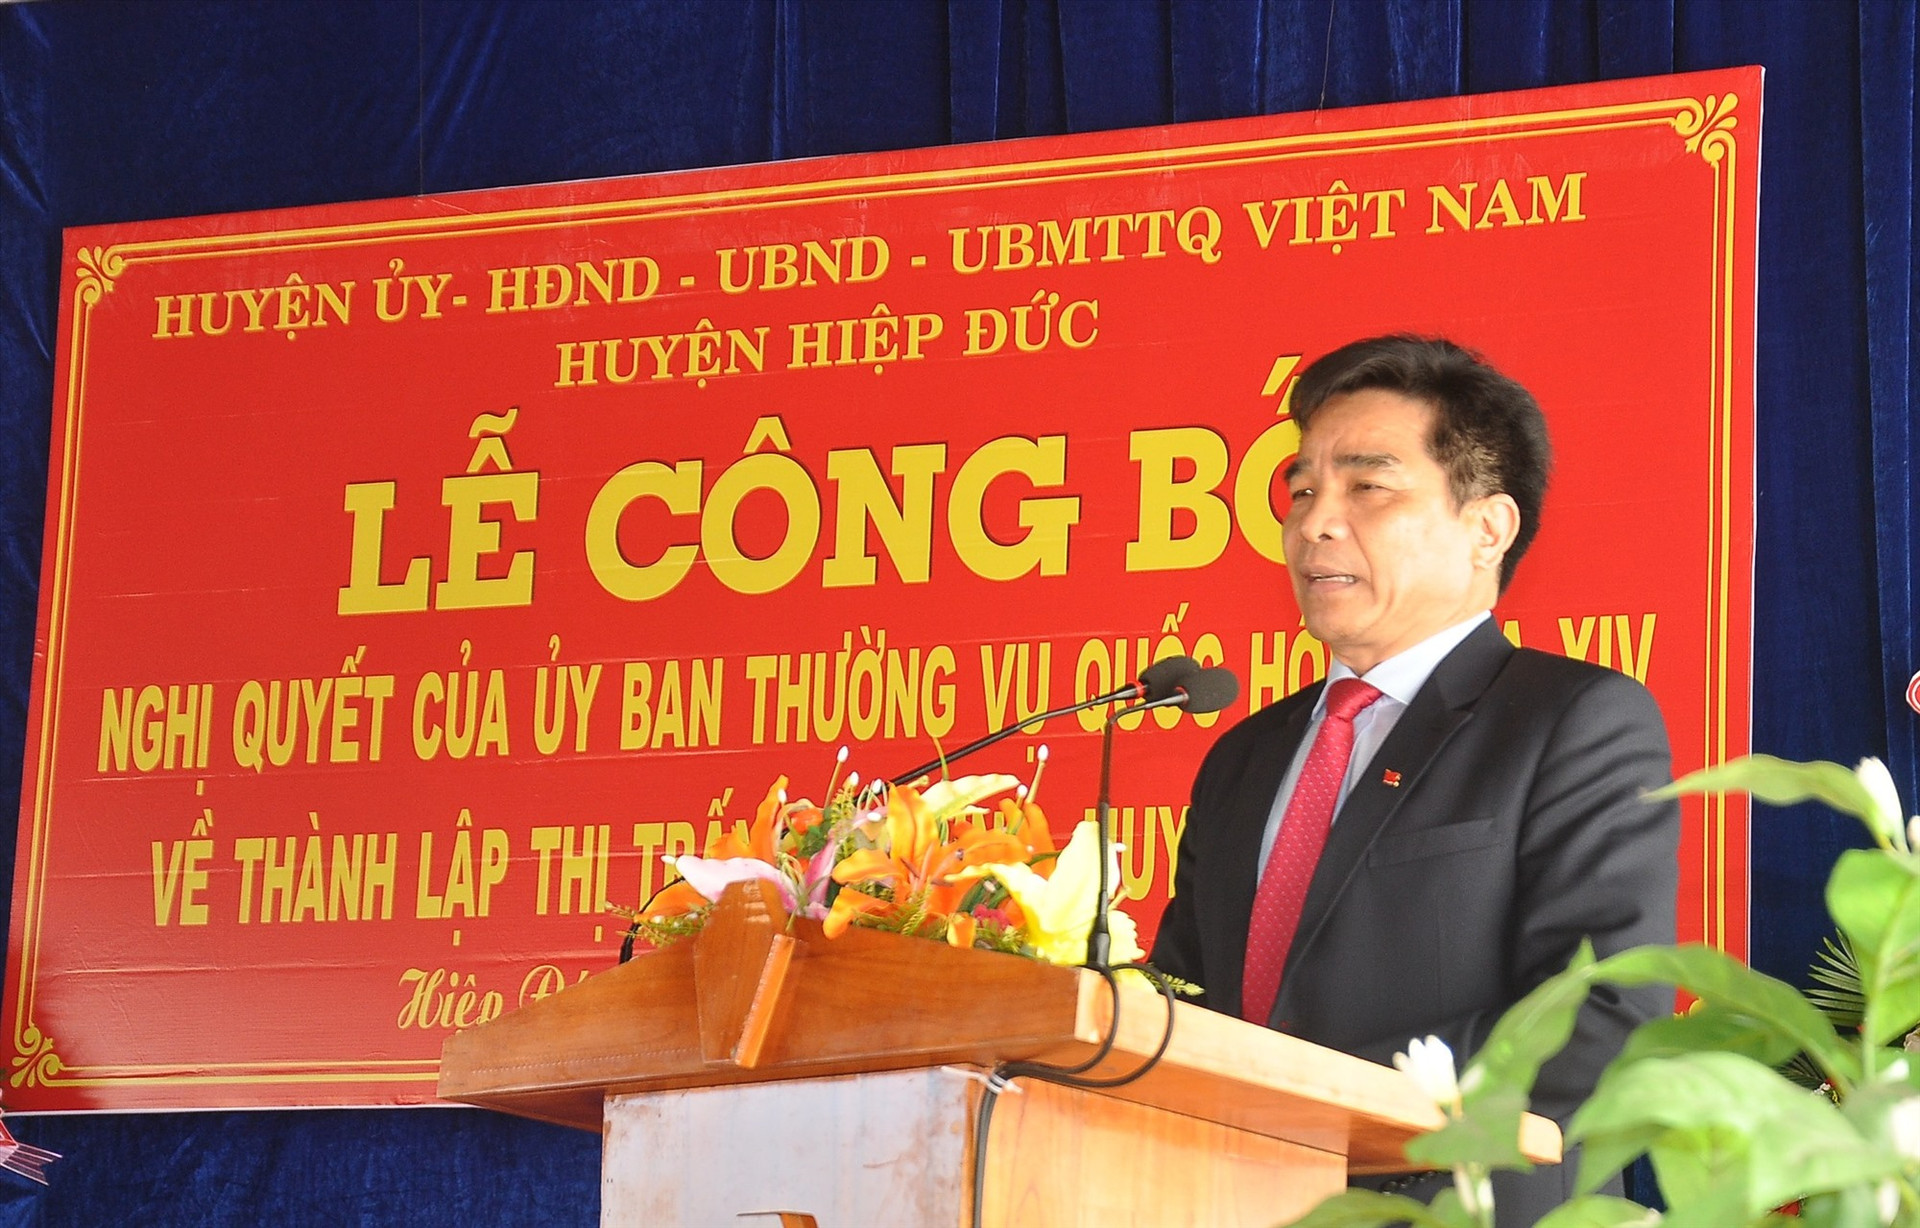 Phó Bí thư Thường trực Tỉnh ủy Lê Văn Dũng phát biểu tại buổi lễ công bố thành lập thị trấn Tân Bình. Ảnh: S.A